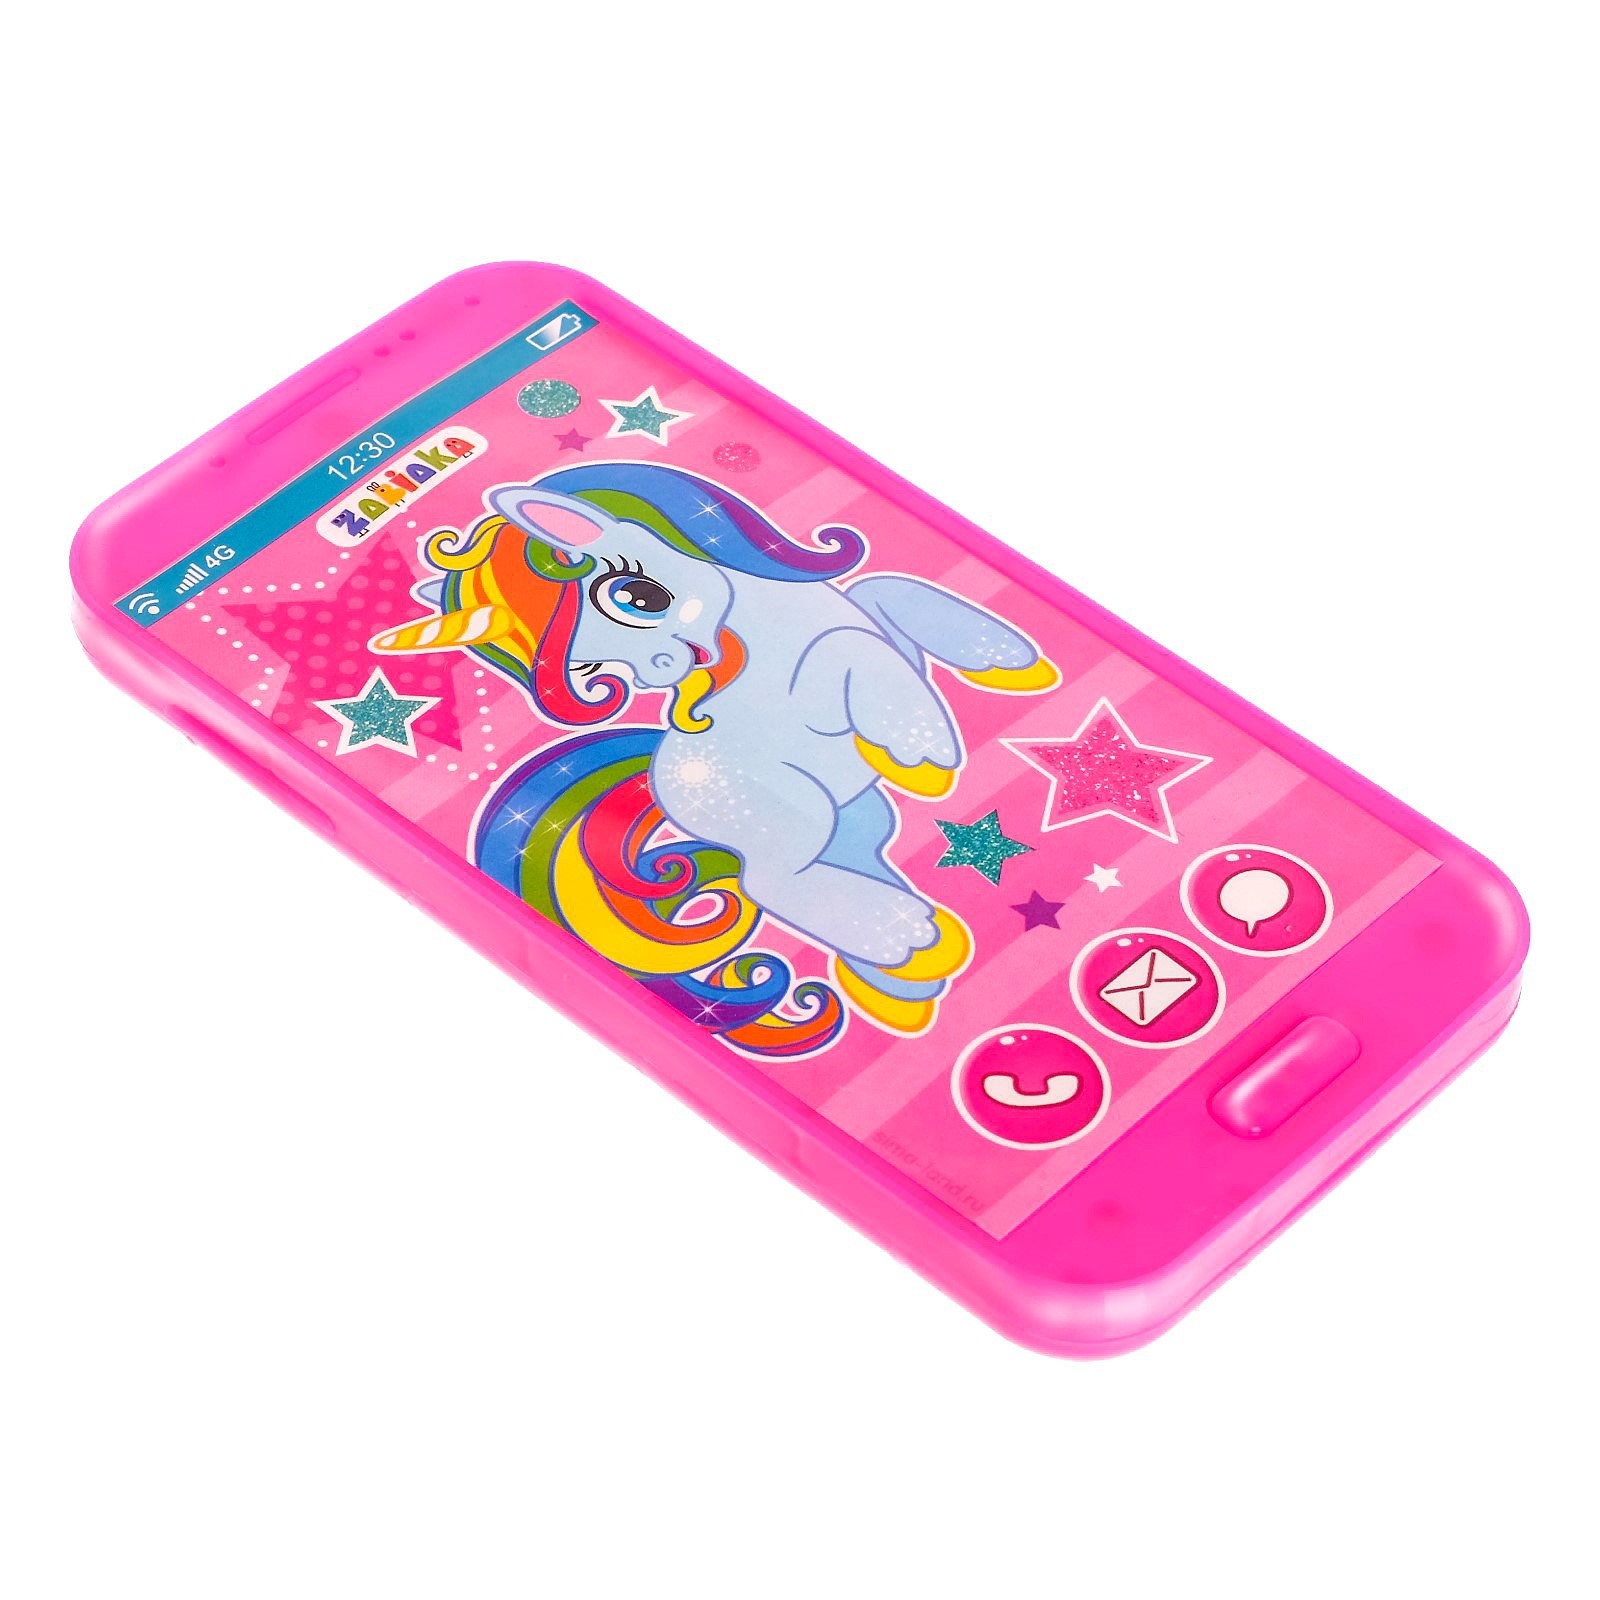 Pony телефон. Телефон пони. Смарт часы. Для девочек. С пони. Игровой телефон poni Toys. Розовый пони на телефон.